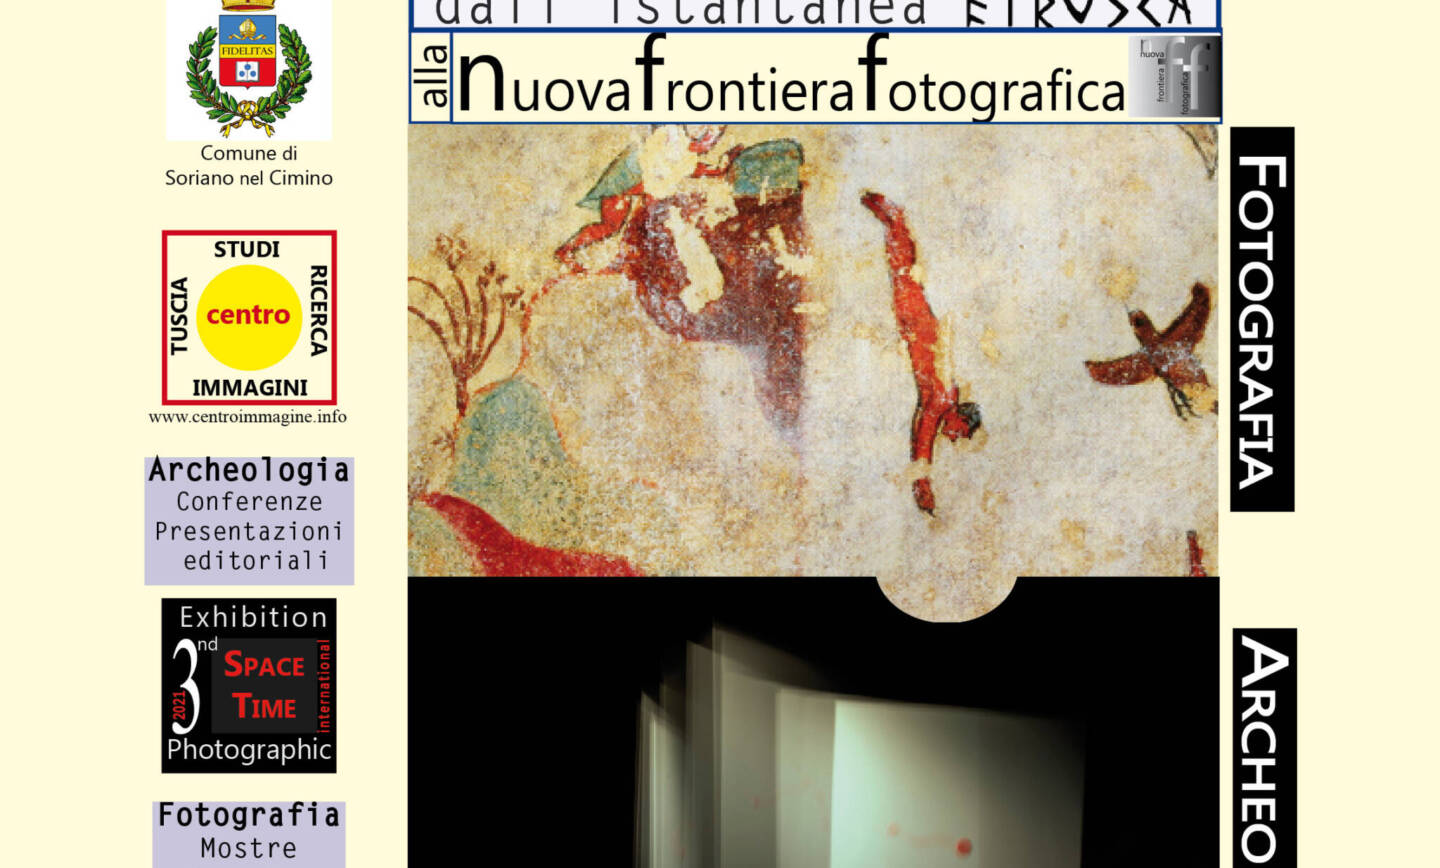 SorianoImmagine2021 – Biennale di fotografia e archeologia